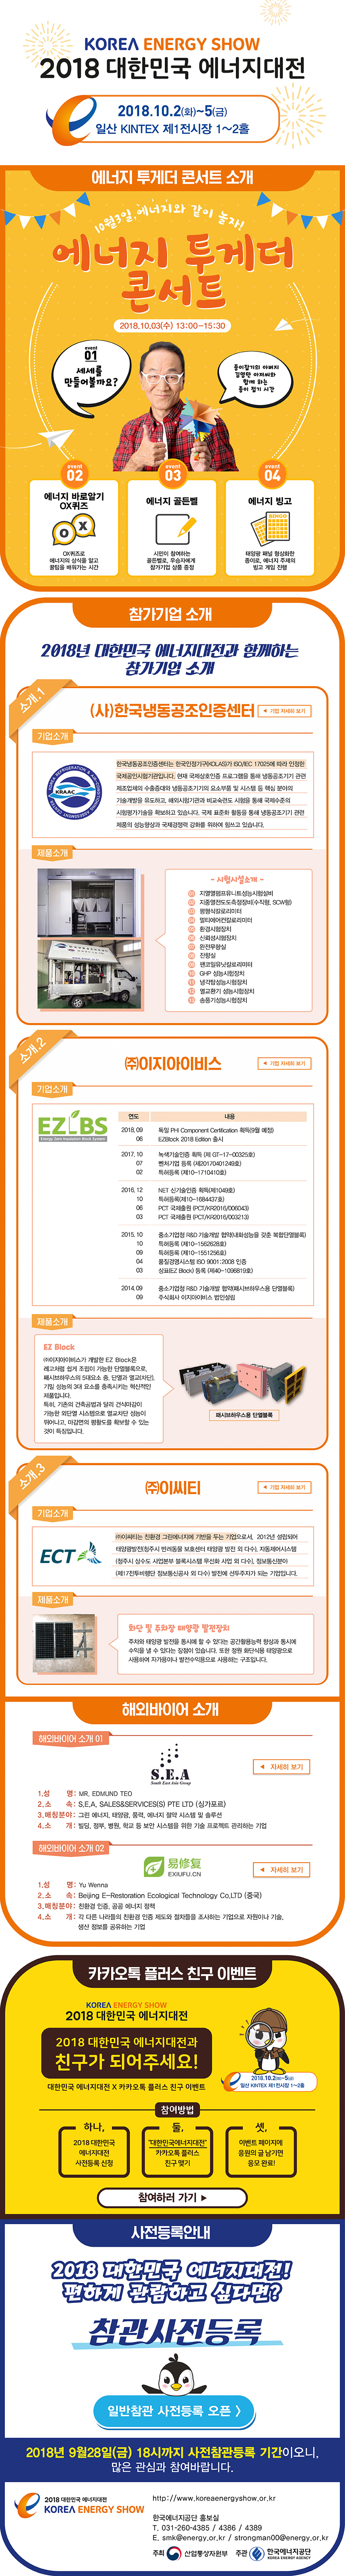 [2018 뉴스레터 Vol.8] 2018 대한민국 에너지대전, 종이접기 김영만 아저씨와 함께 하는 에너지 투게더 콘서트 기대하세요~!